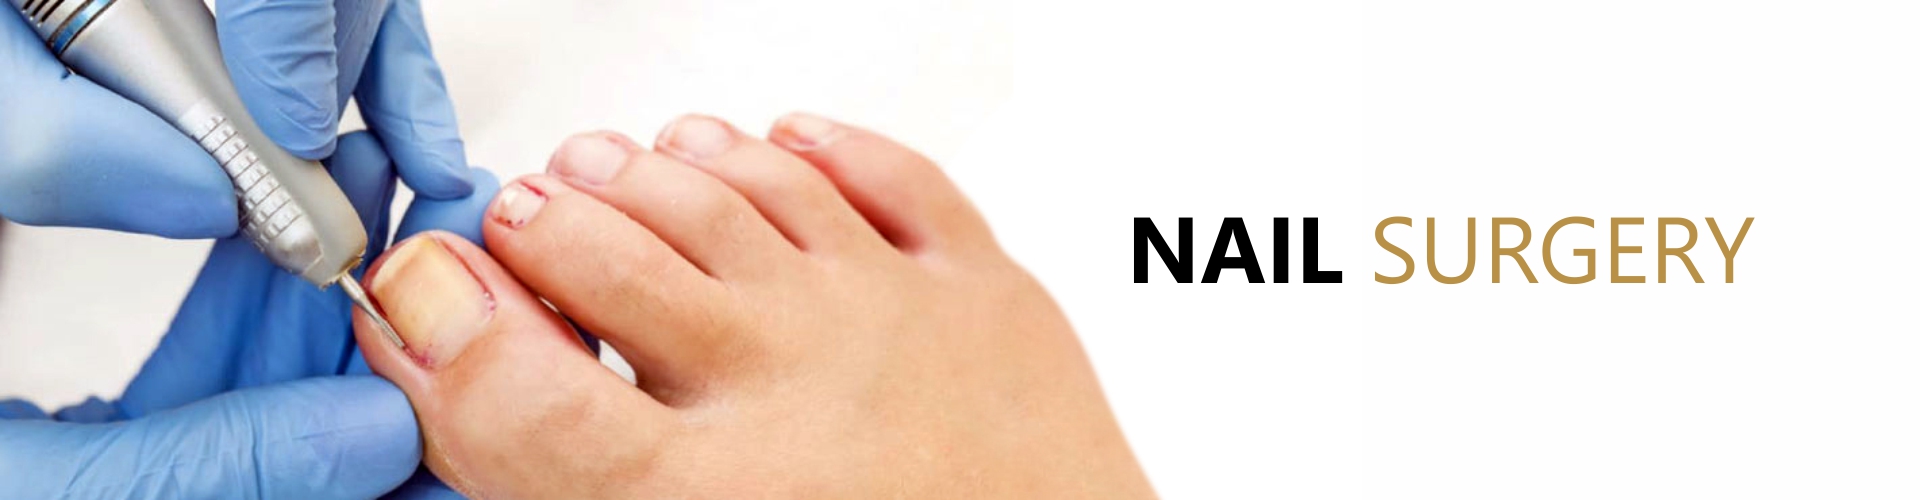 Nail Surgery - Feet First Thame